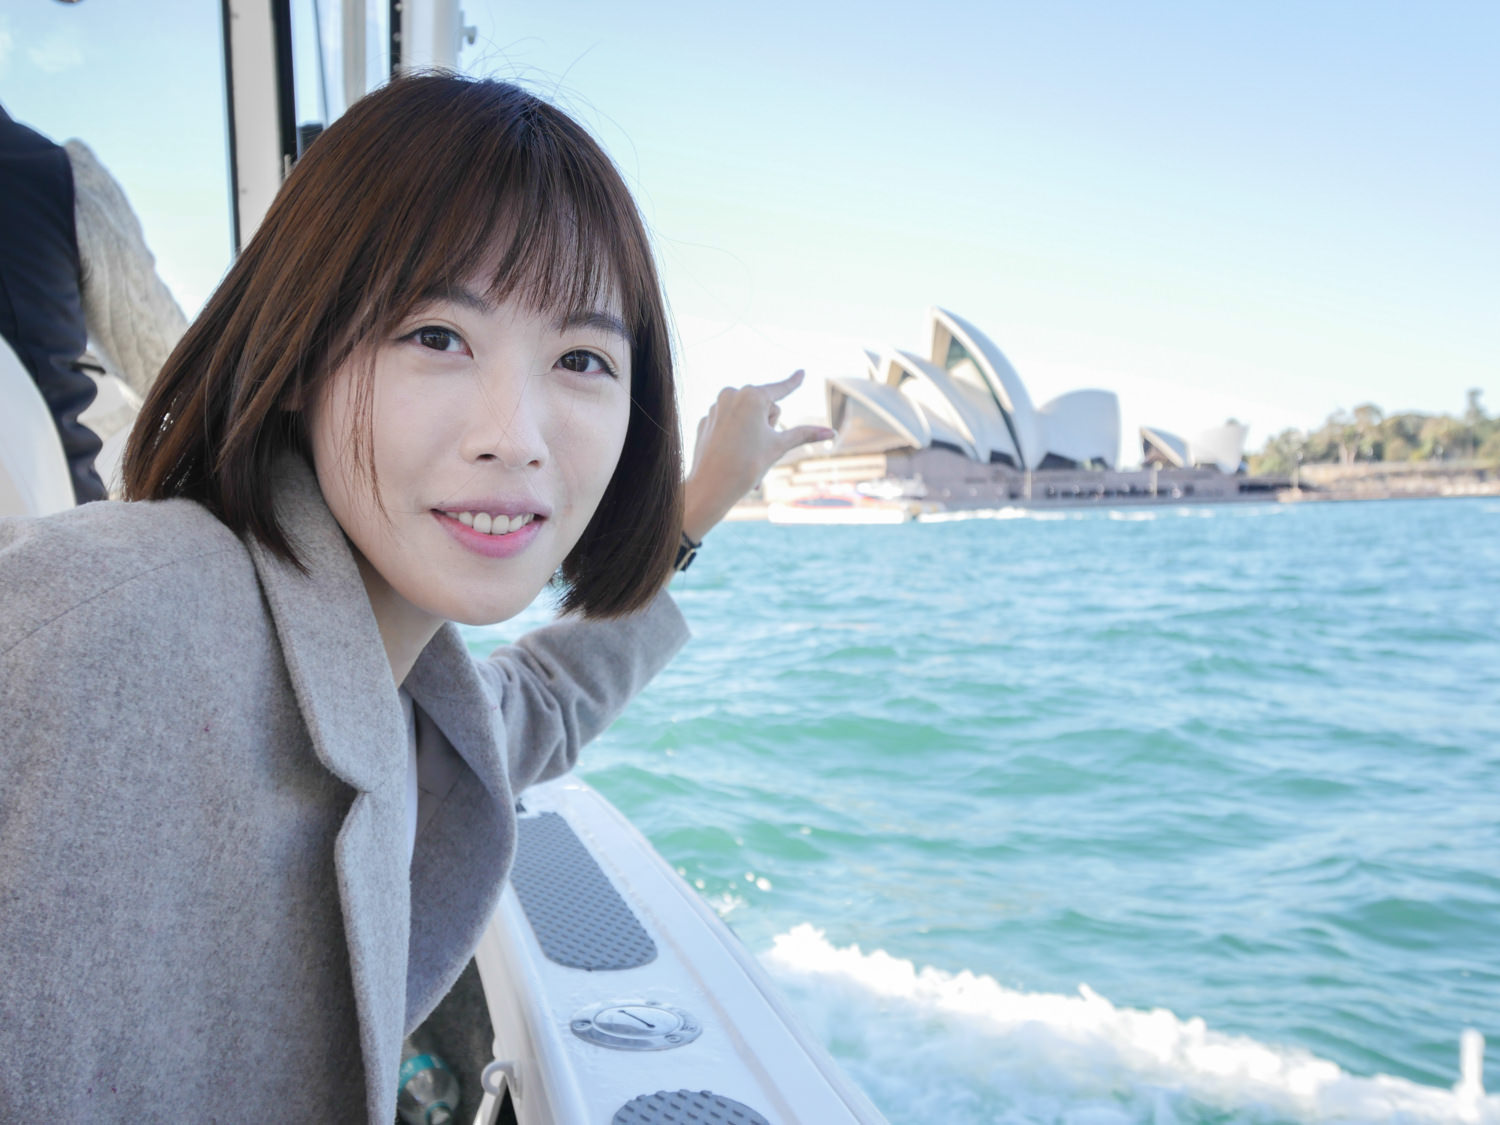 澳洲雪梨遊船 Sydney Harbour Boat Tours 快艇遊雪梨港灣景點、檢疫站、屈臣氏灣